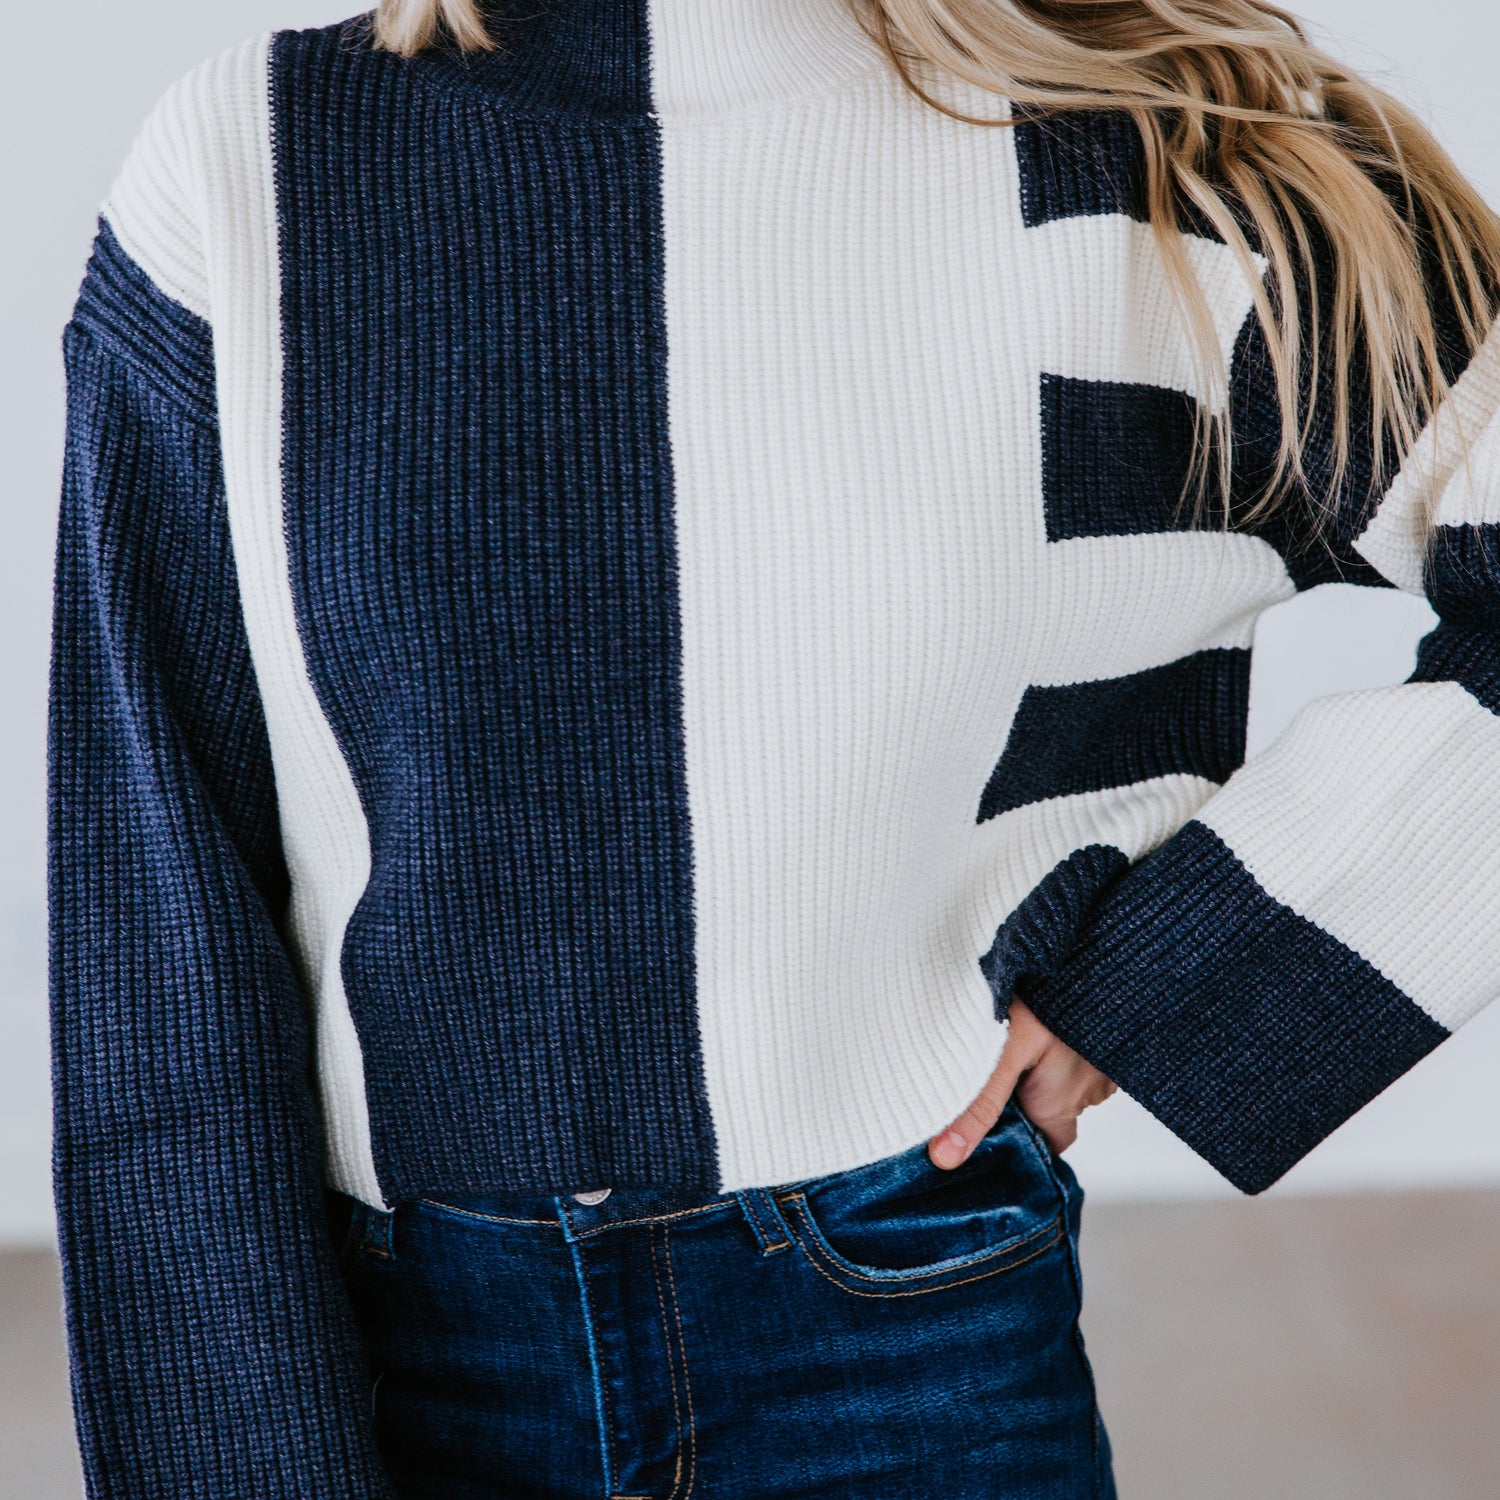 Kloe Striped Sweater